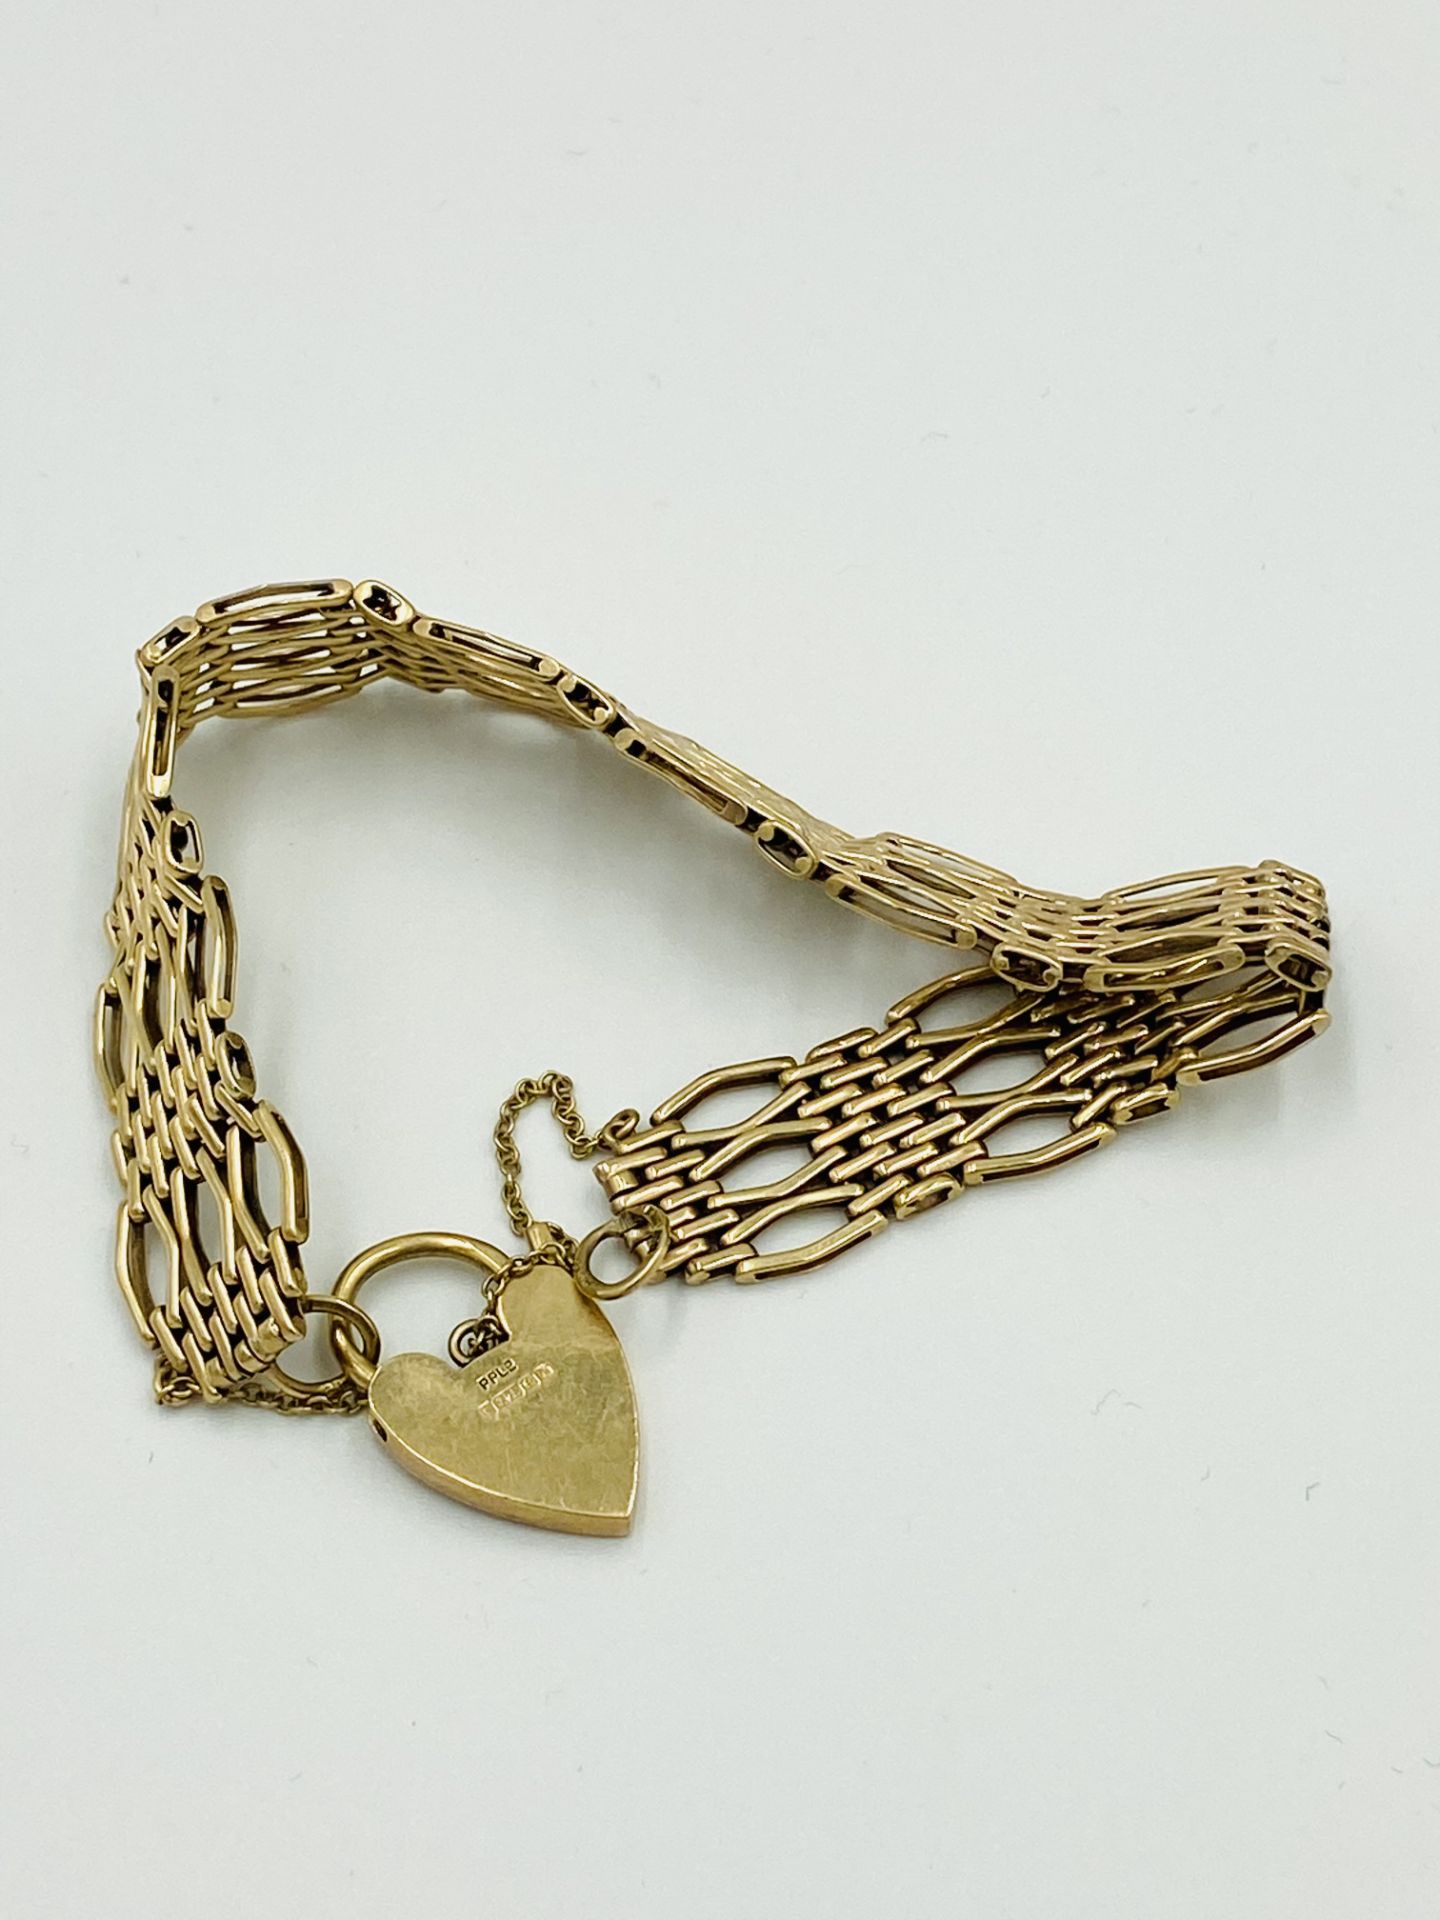 9ct gold gate bracelet - Image 5 of 5